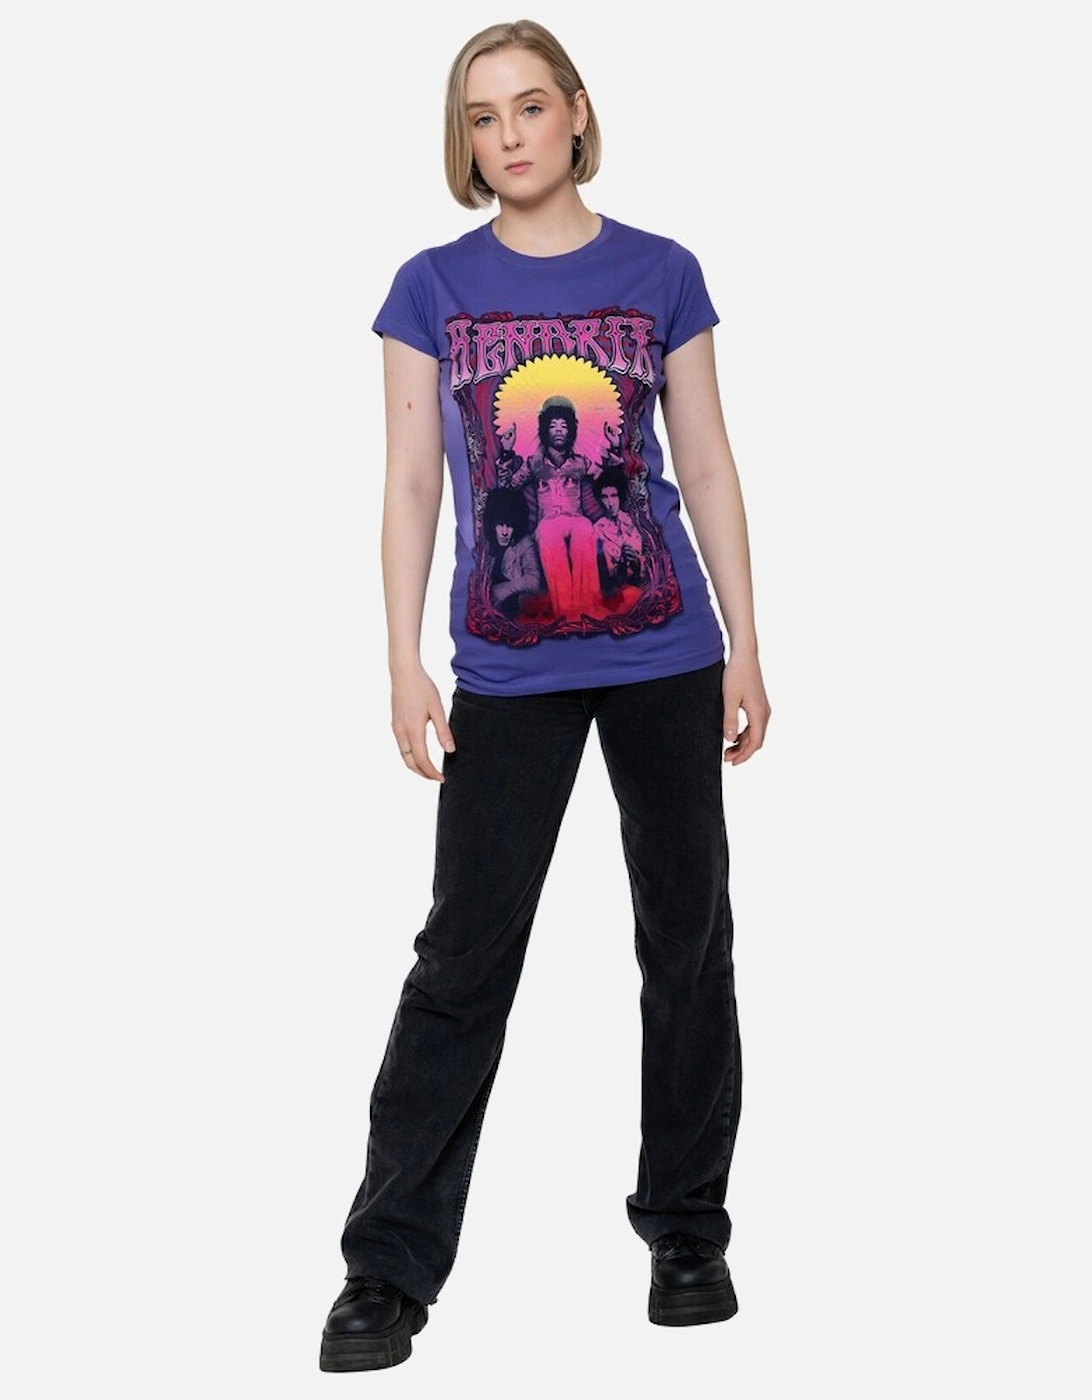 Womens/Ladies Karl Ferris Wheel Cotton T-Shirt